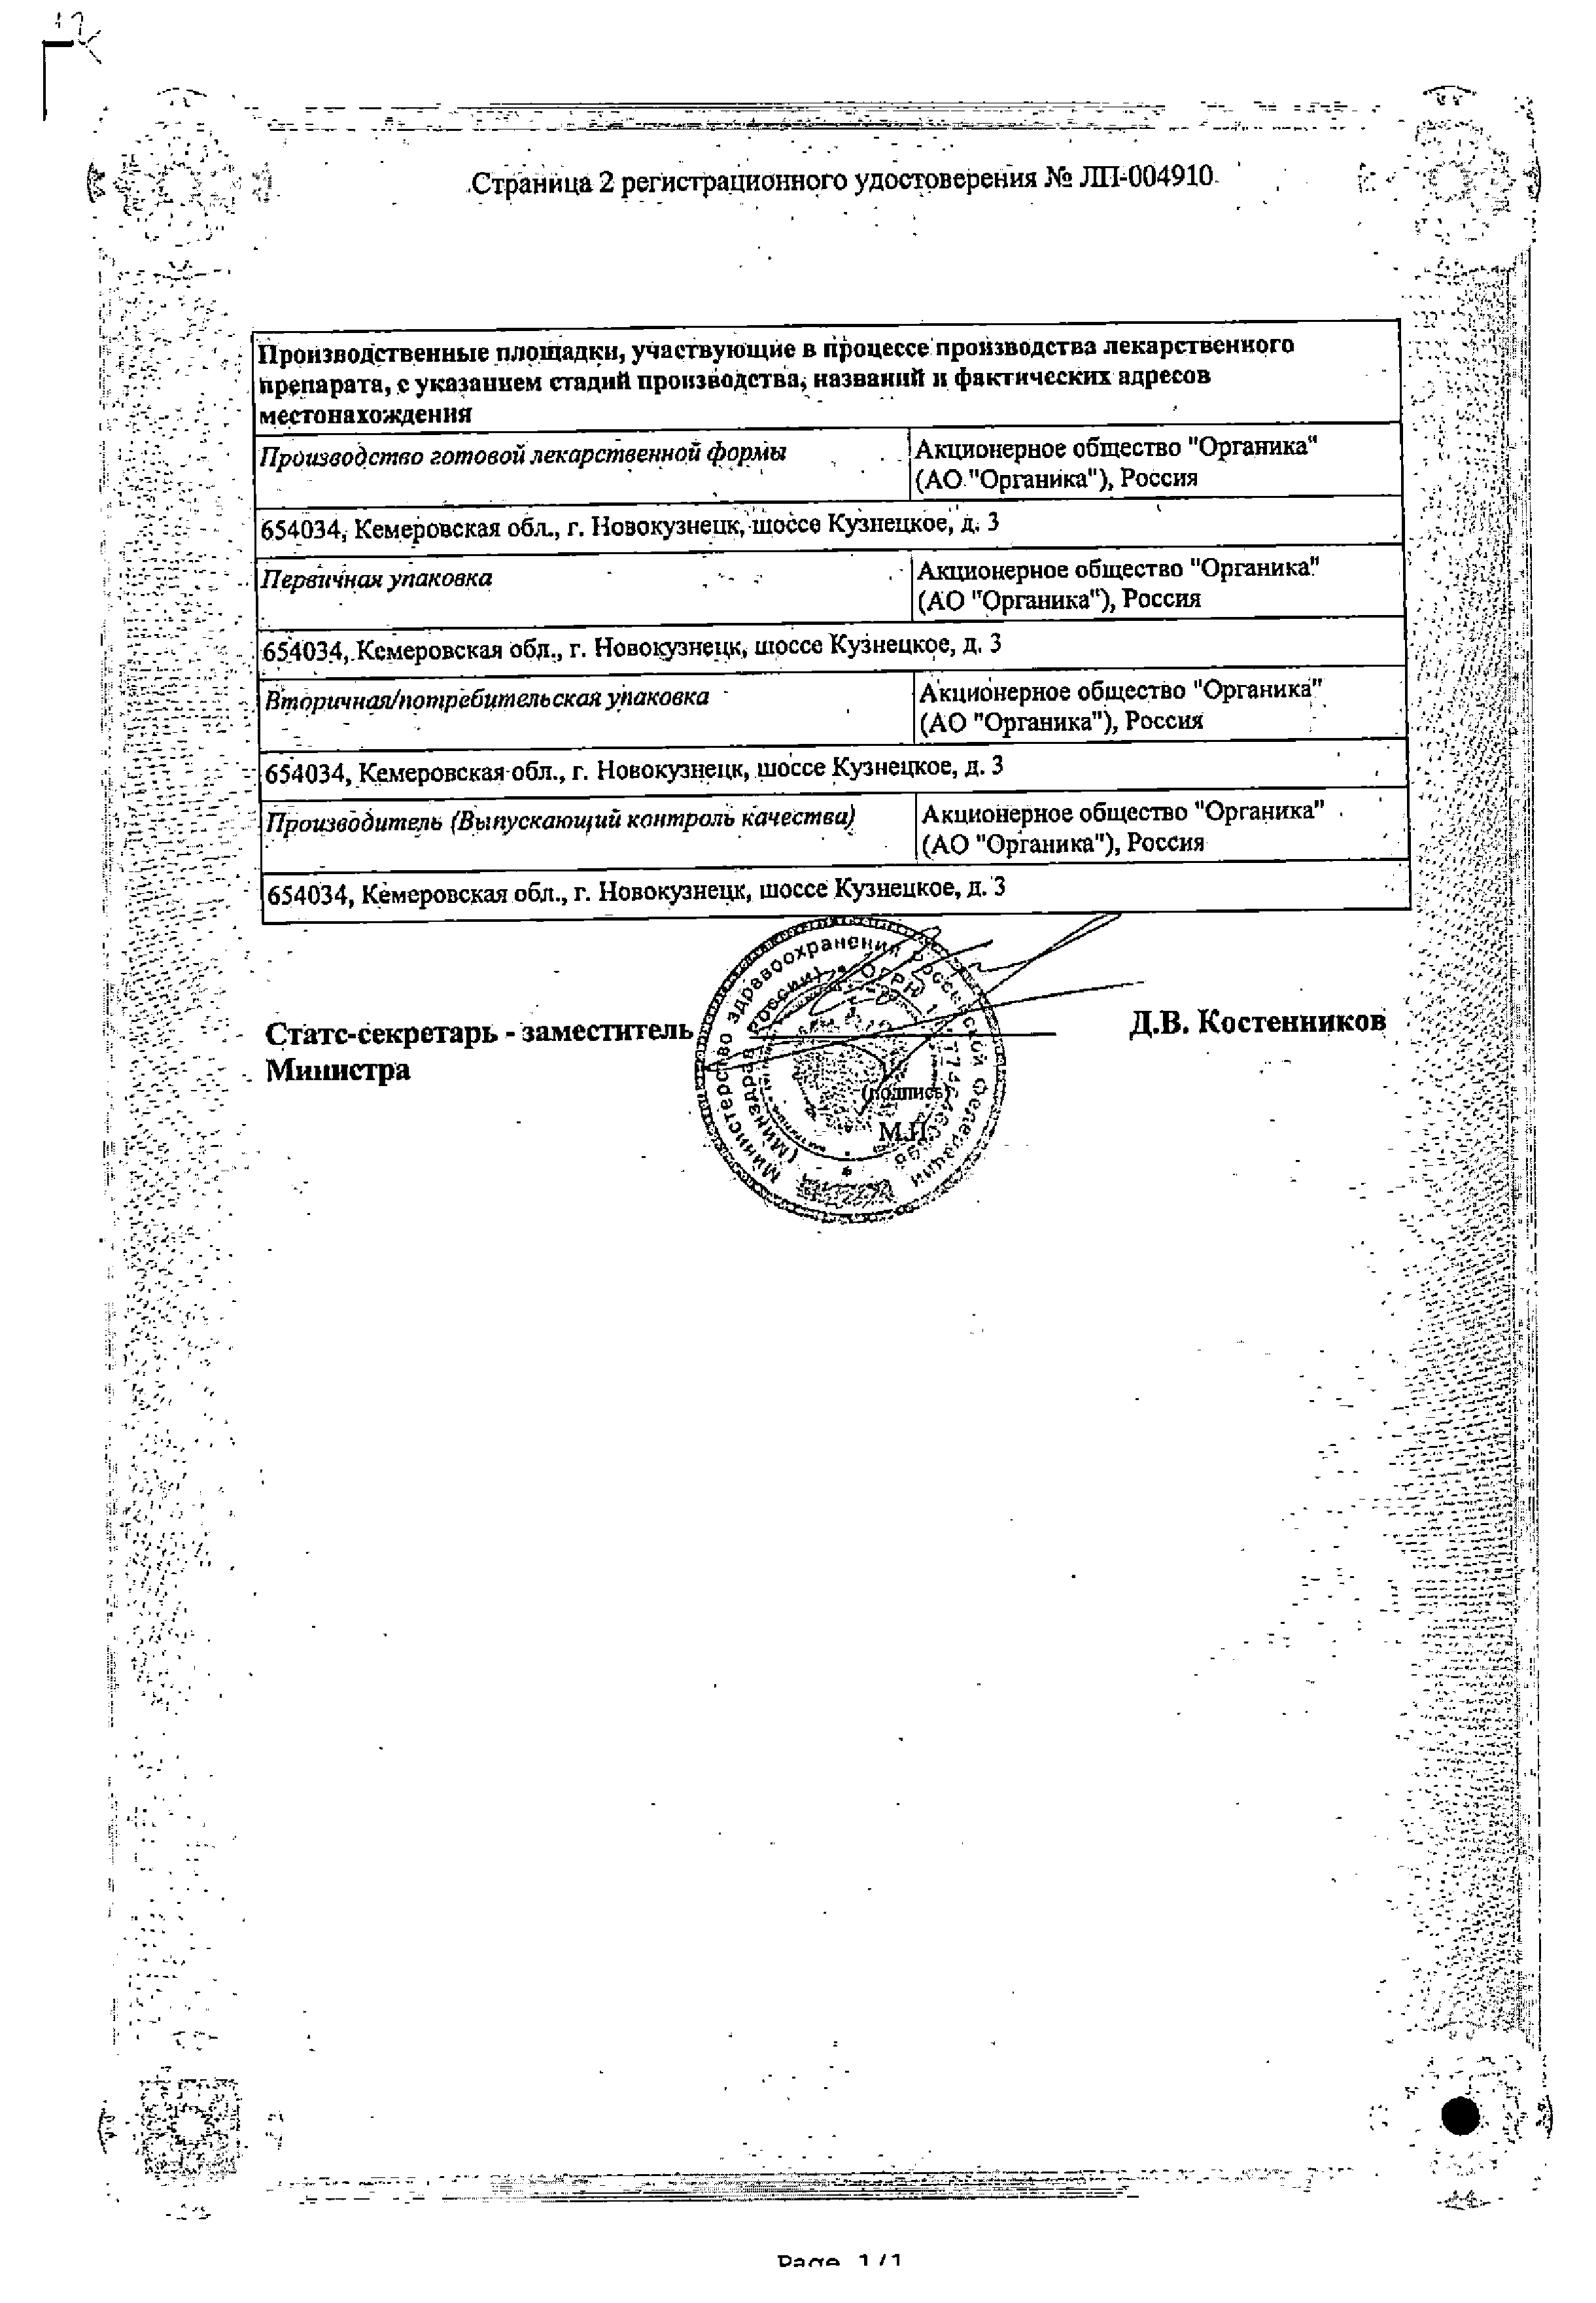 Мельдоний Органика сертификат